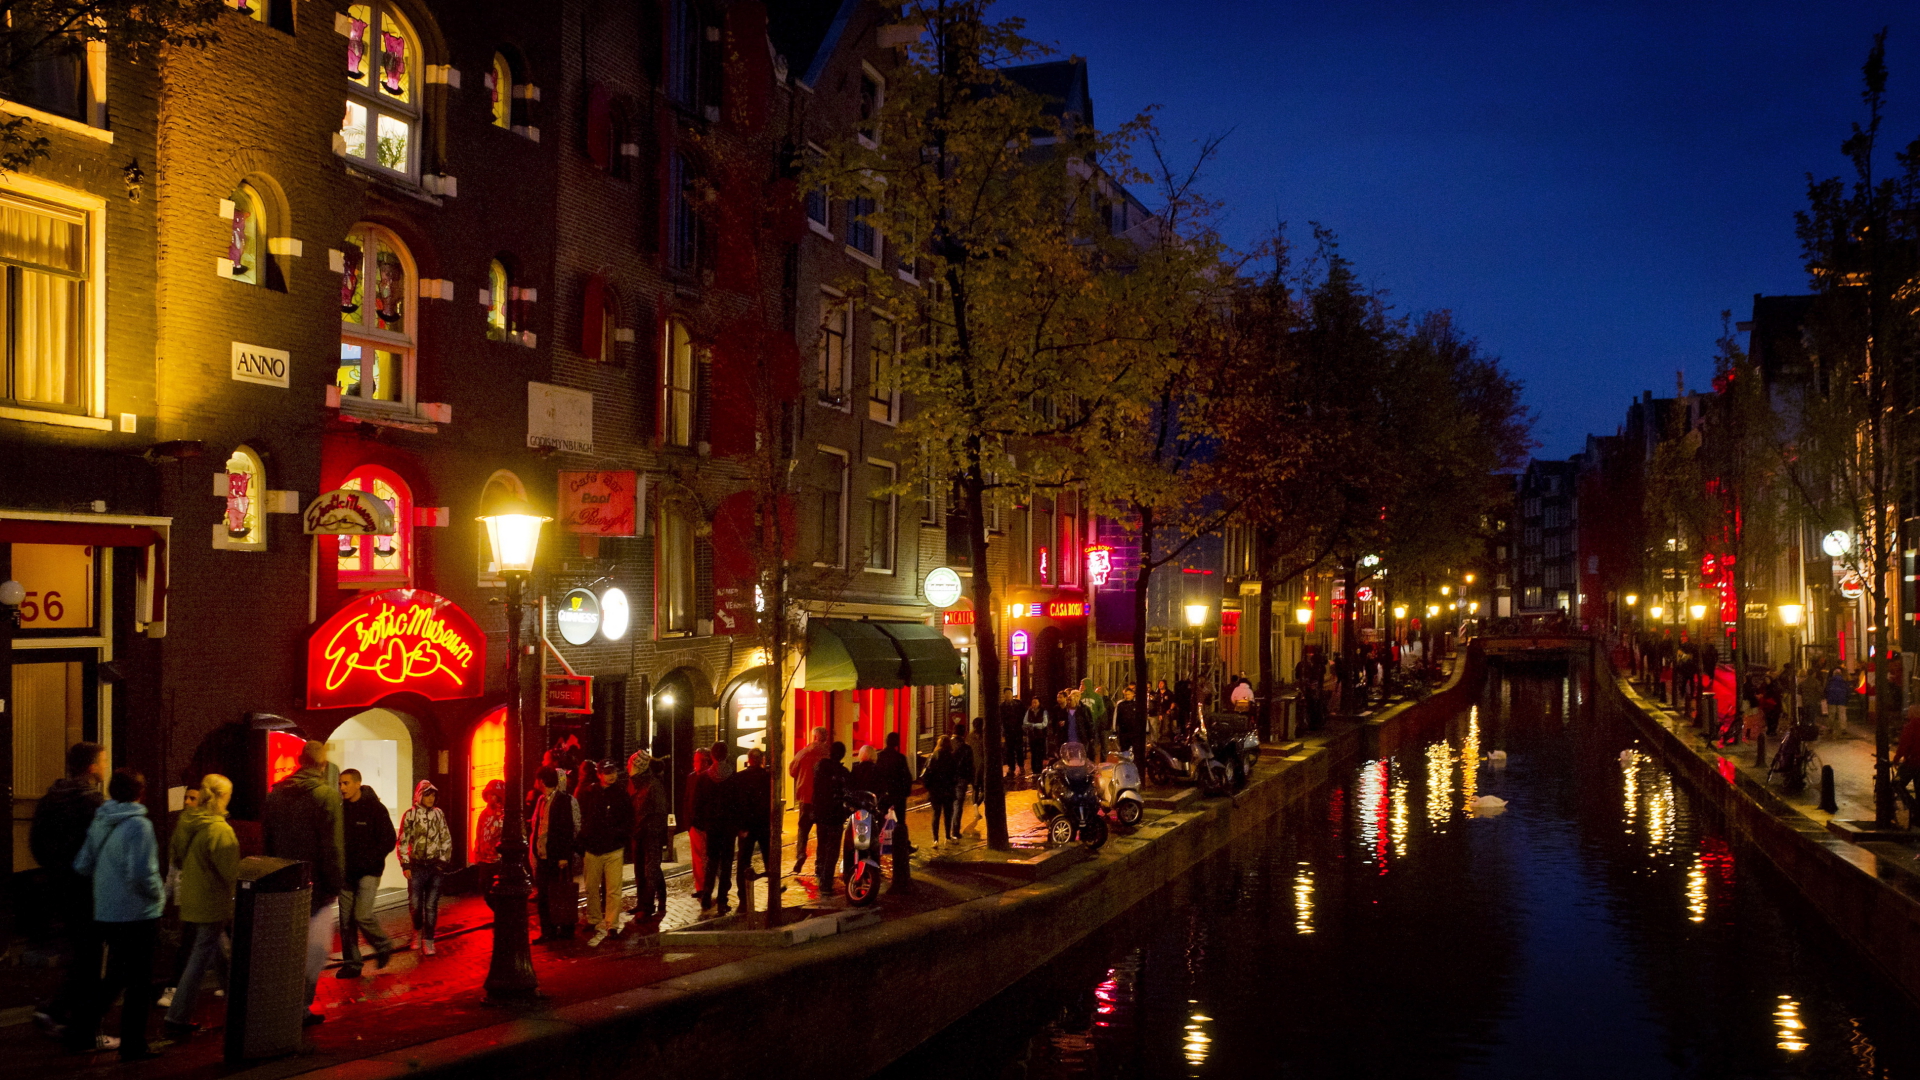 Das Rotlichtviertel in Amsterdam. | dpa